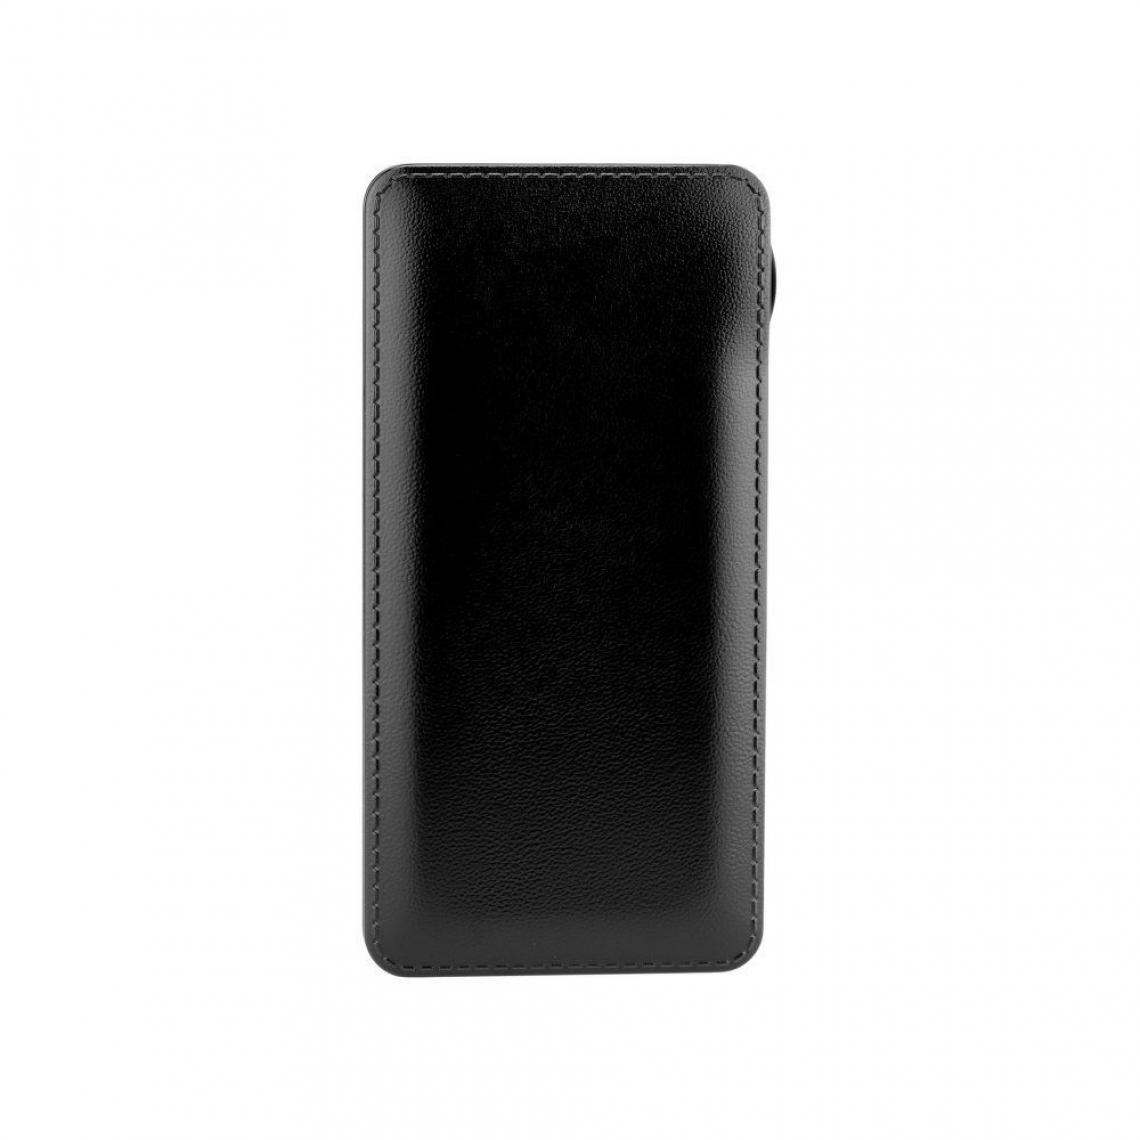 Ozzzo - Chargeur batterie externe 30000 mAh powerbank ozzzo noir pour Samsung Galaxy A10 - Autres accessoires smartphone